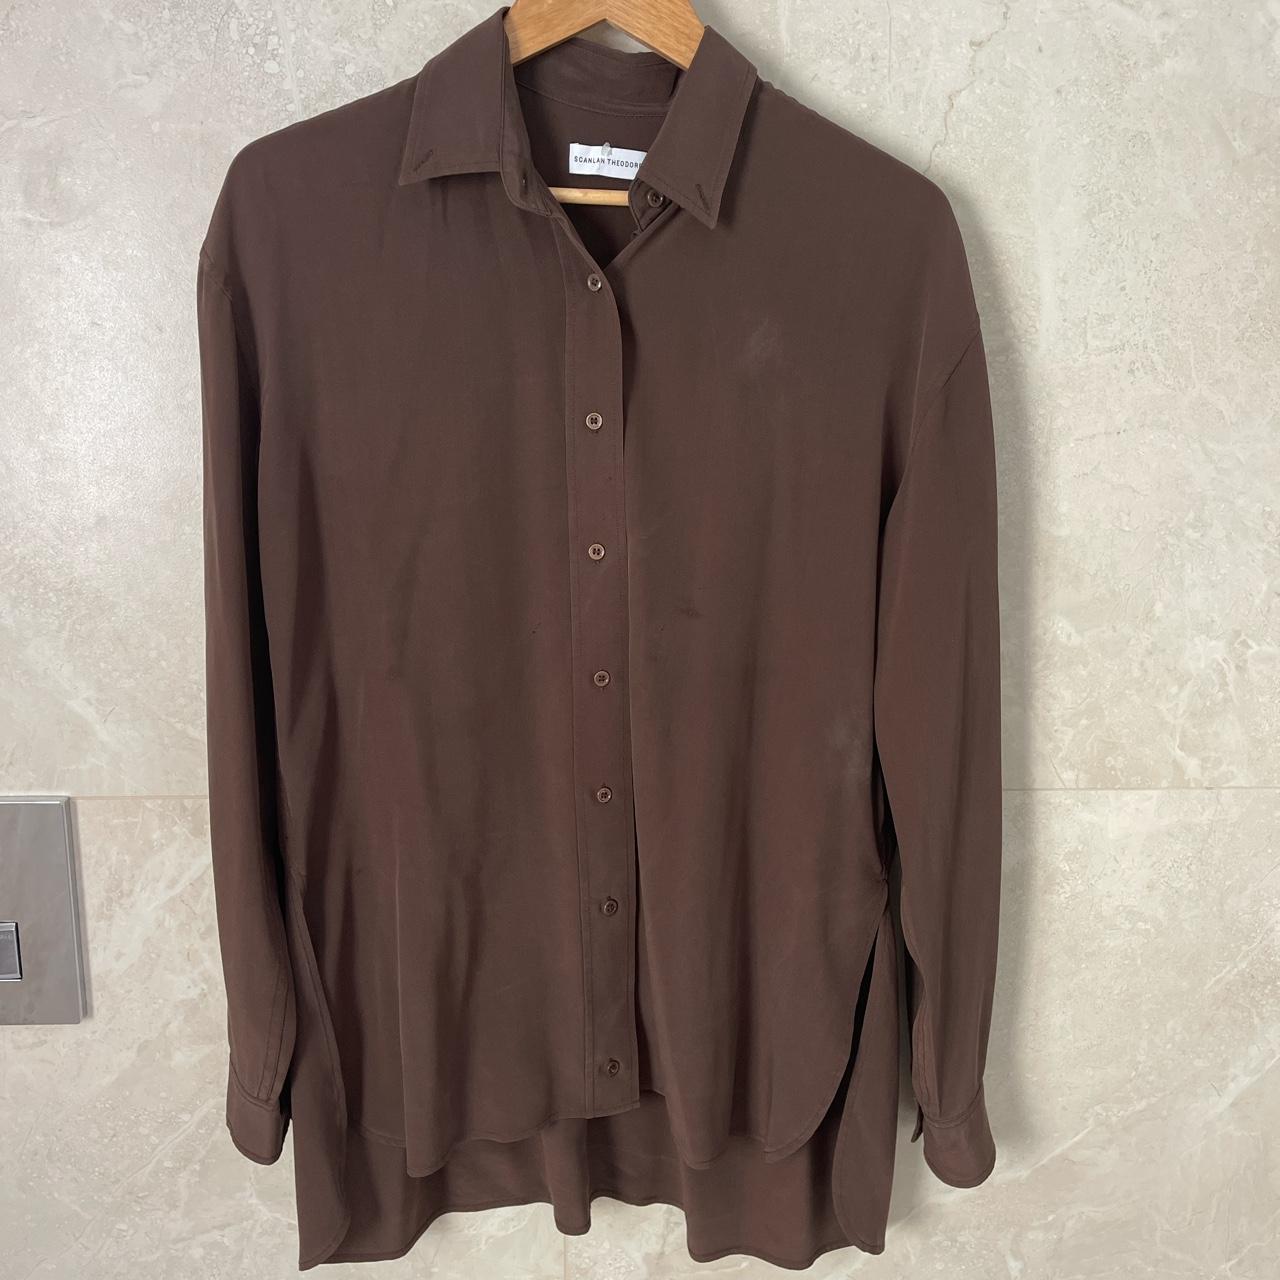 Scanlan Theodore cotton shirt - choc - size 6 - Depop